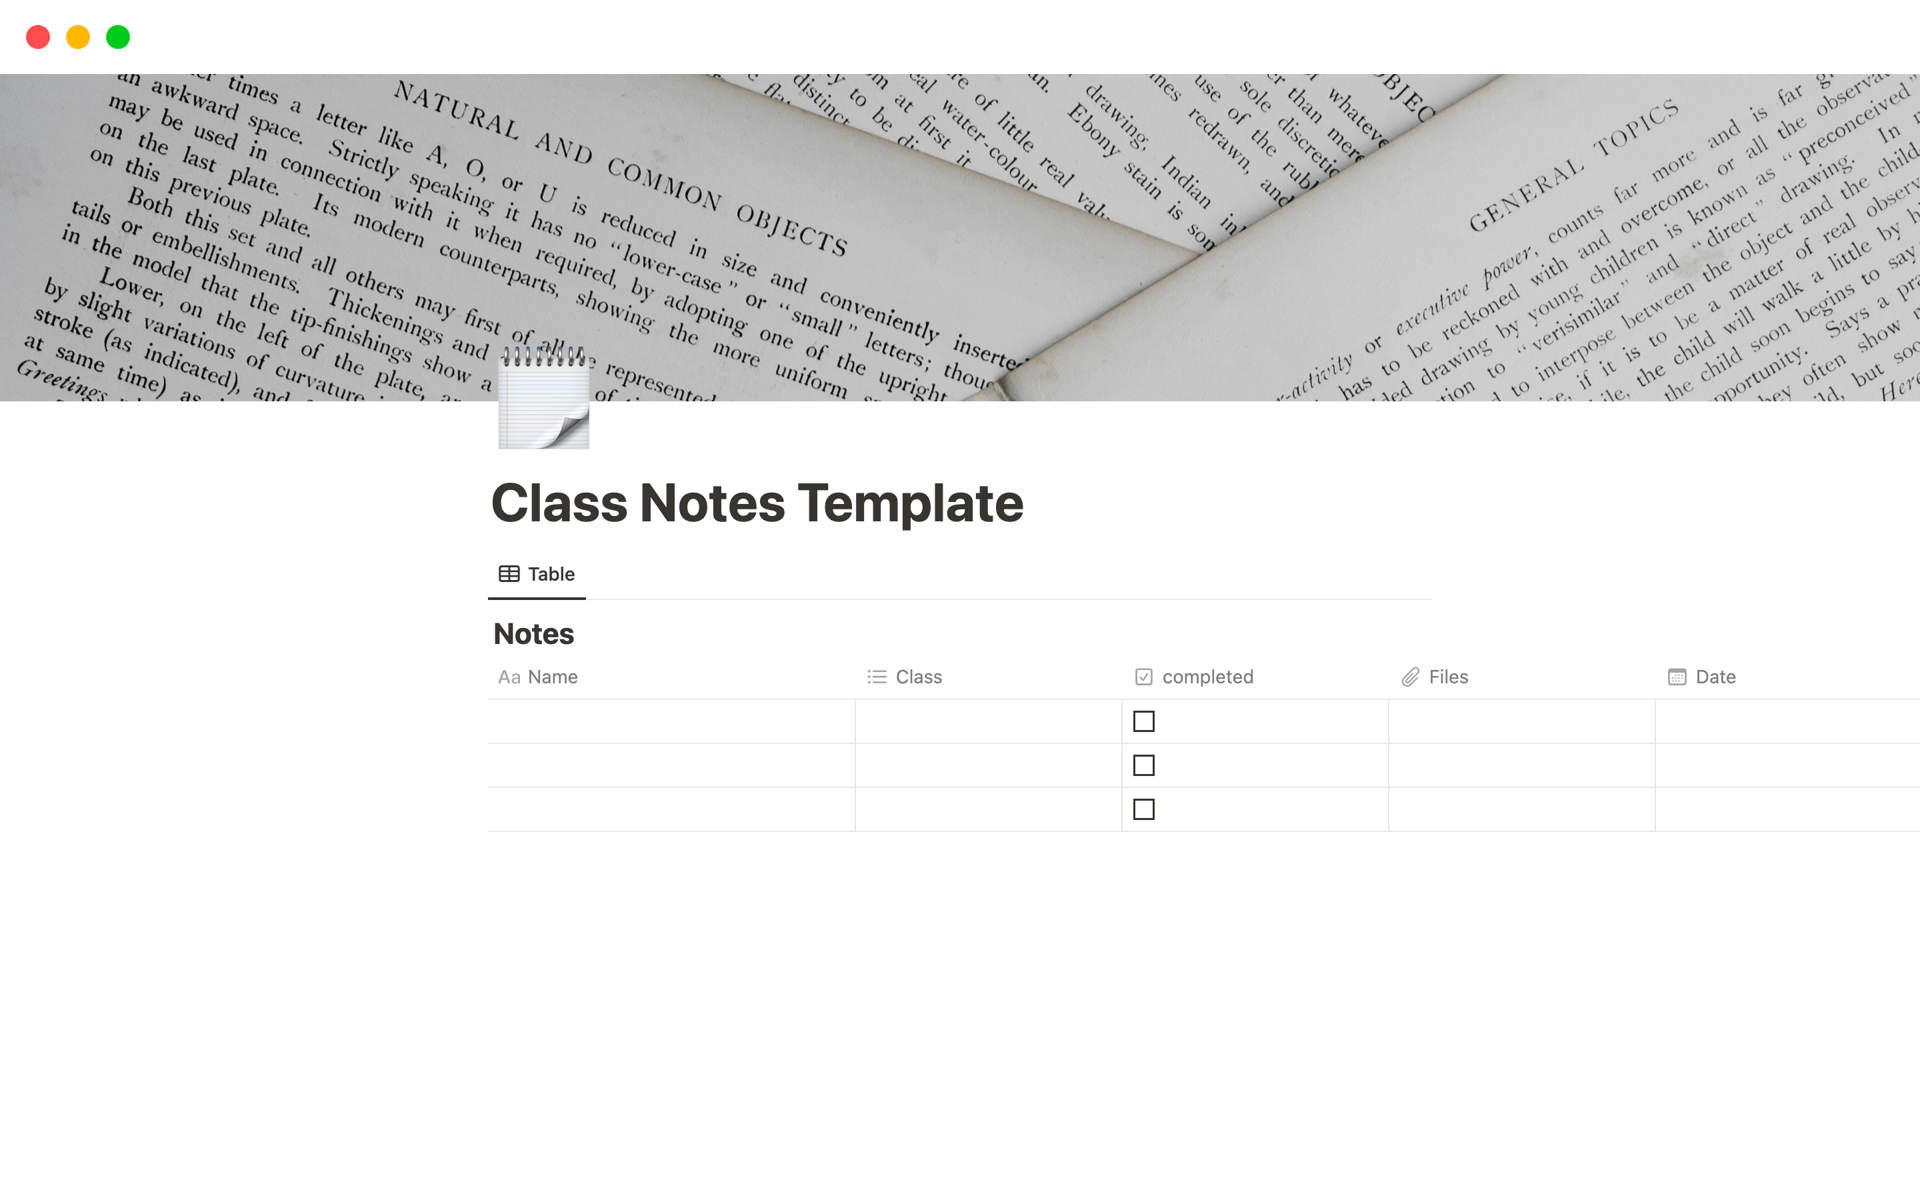 Aperçu du modèle de Class Notes